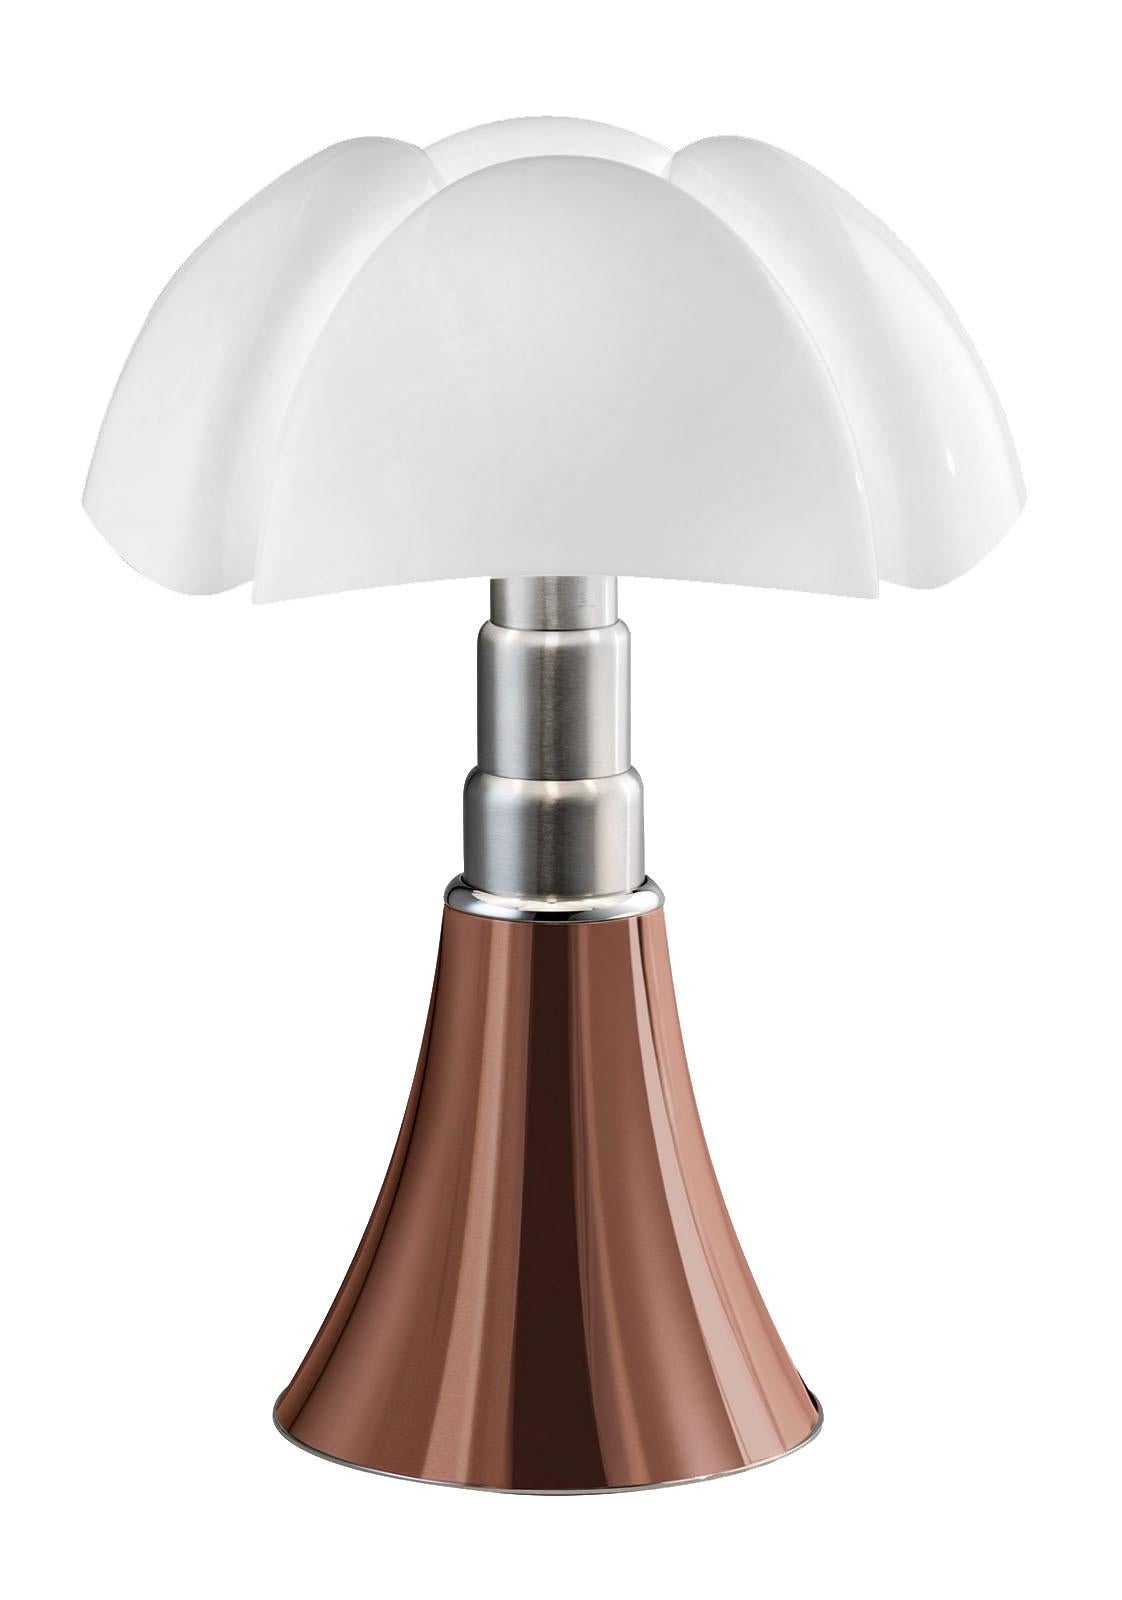 En vente : Orange (Rame) Lampe de bureau Martinelli Luce LED Minipipistrello 620/J de Gae Aulenti